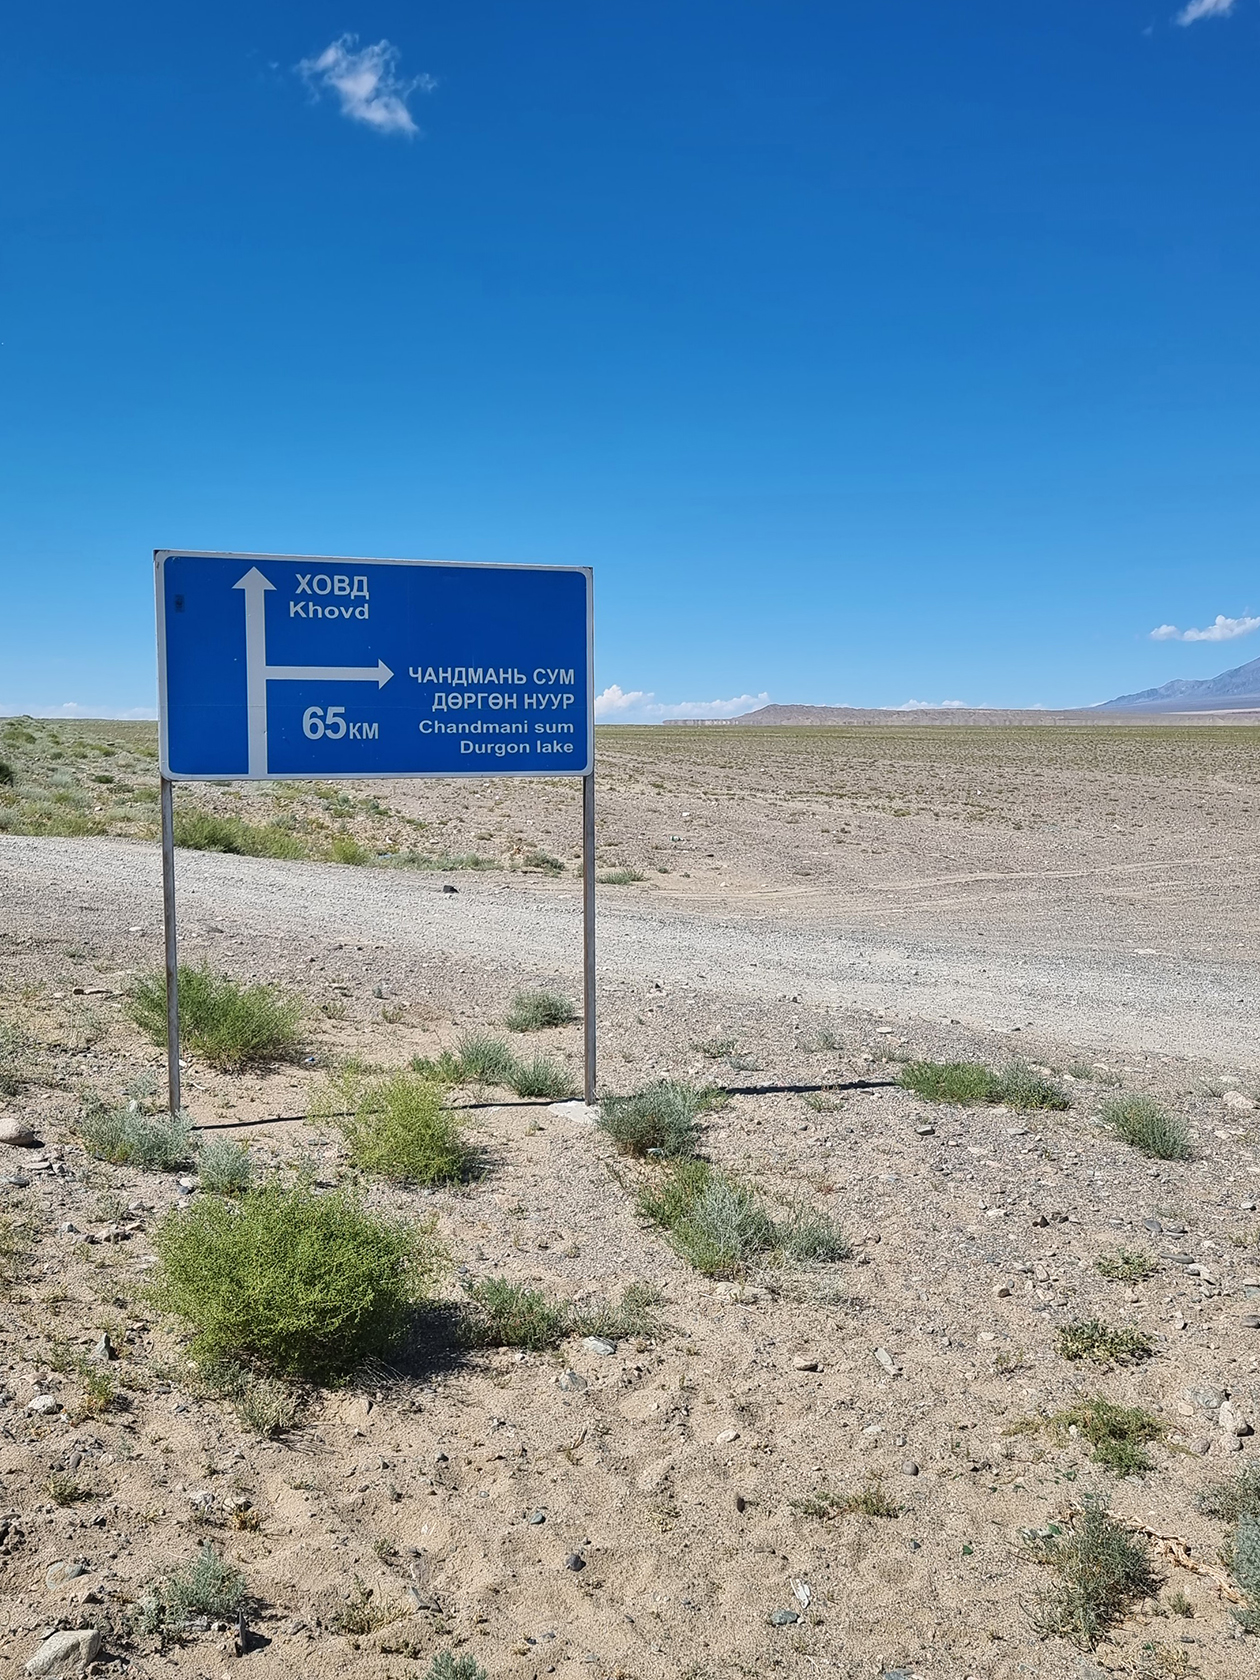 В Монголии одна дорога. Хорошая, асфальтированная, но одна. Все остальное — направления, накатанные автомобилистами по степям. Для направлений есть навигатор, которым пользуются все водители. Ушел в другую колею — и ты уже не там, где хотелось бы